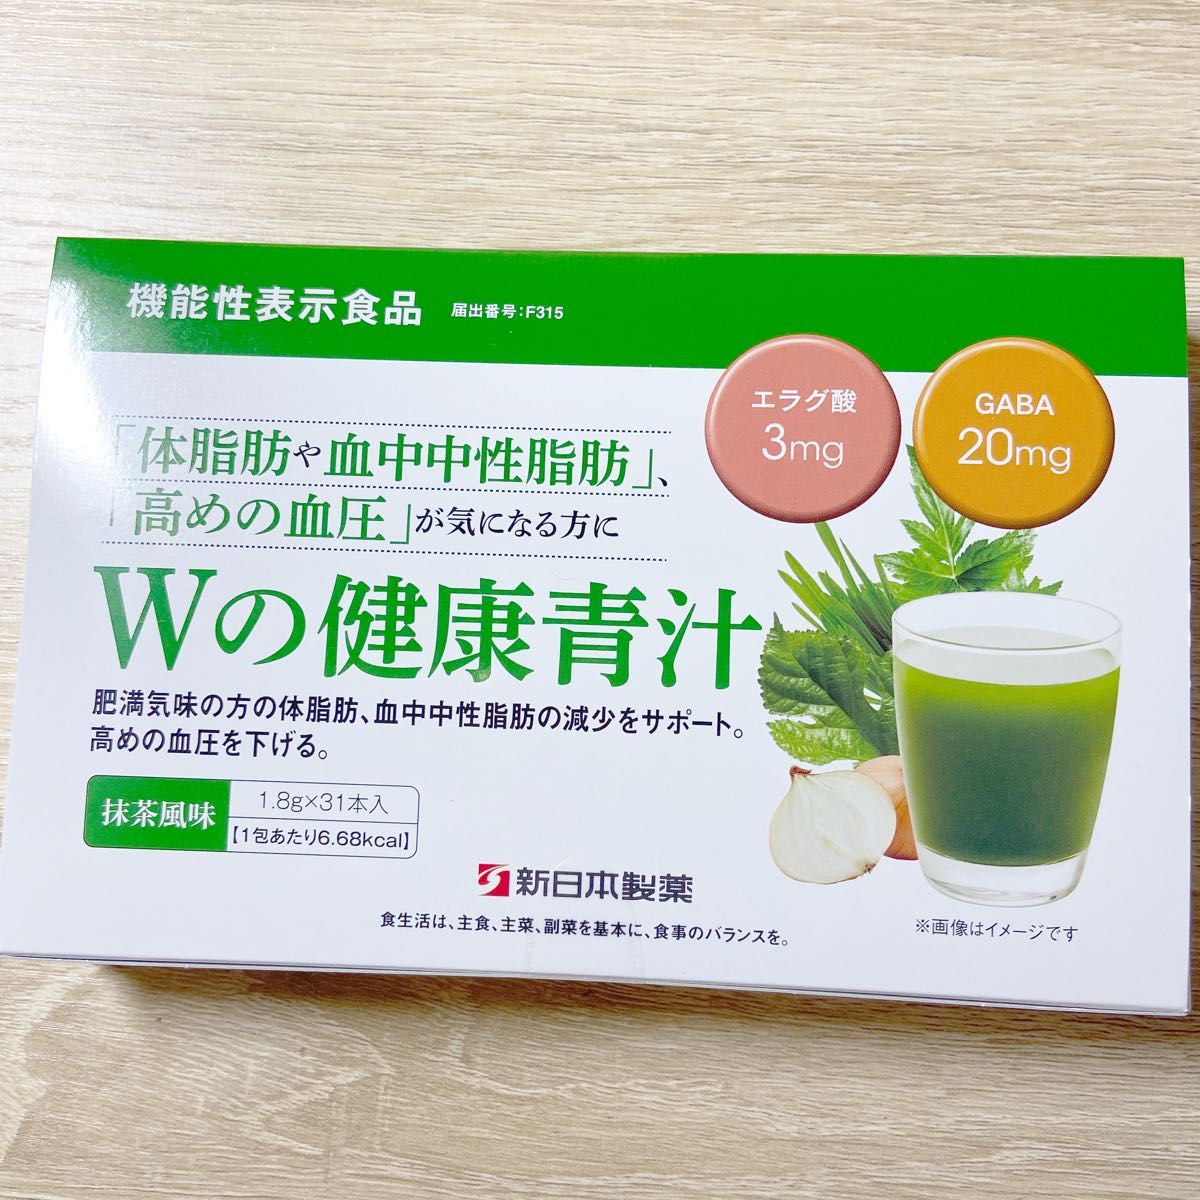 新品】新日本製薬 生活習慣サポート Wの健康青汁 1箱 31本入り｜PayPay